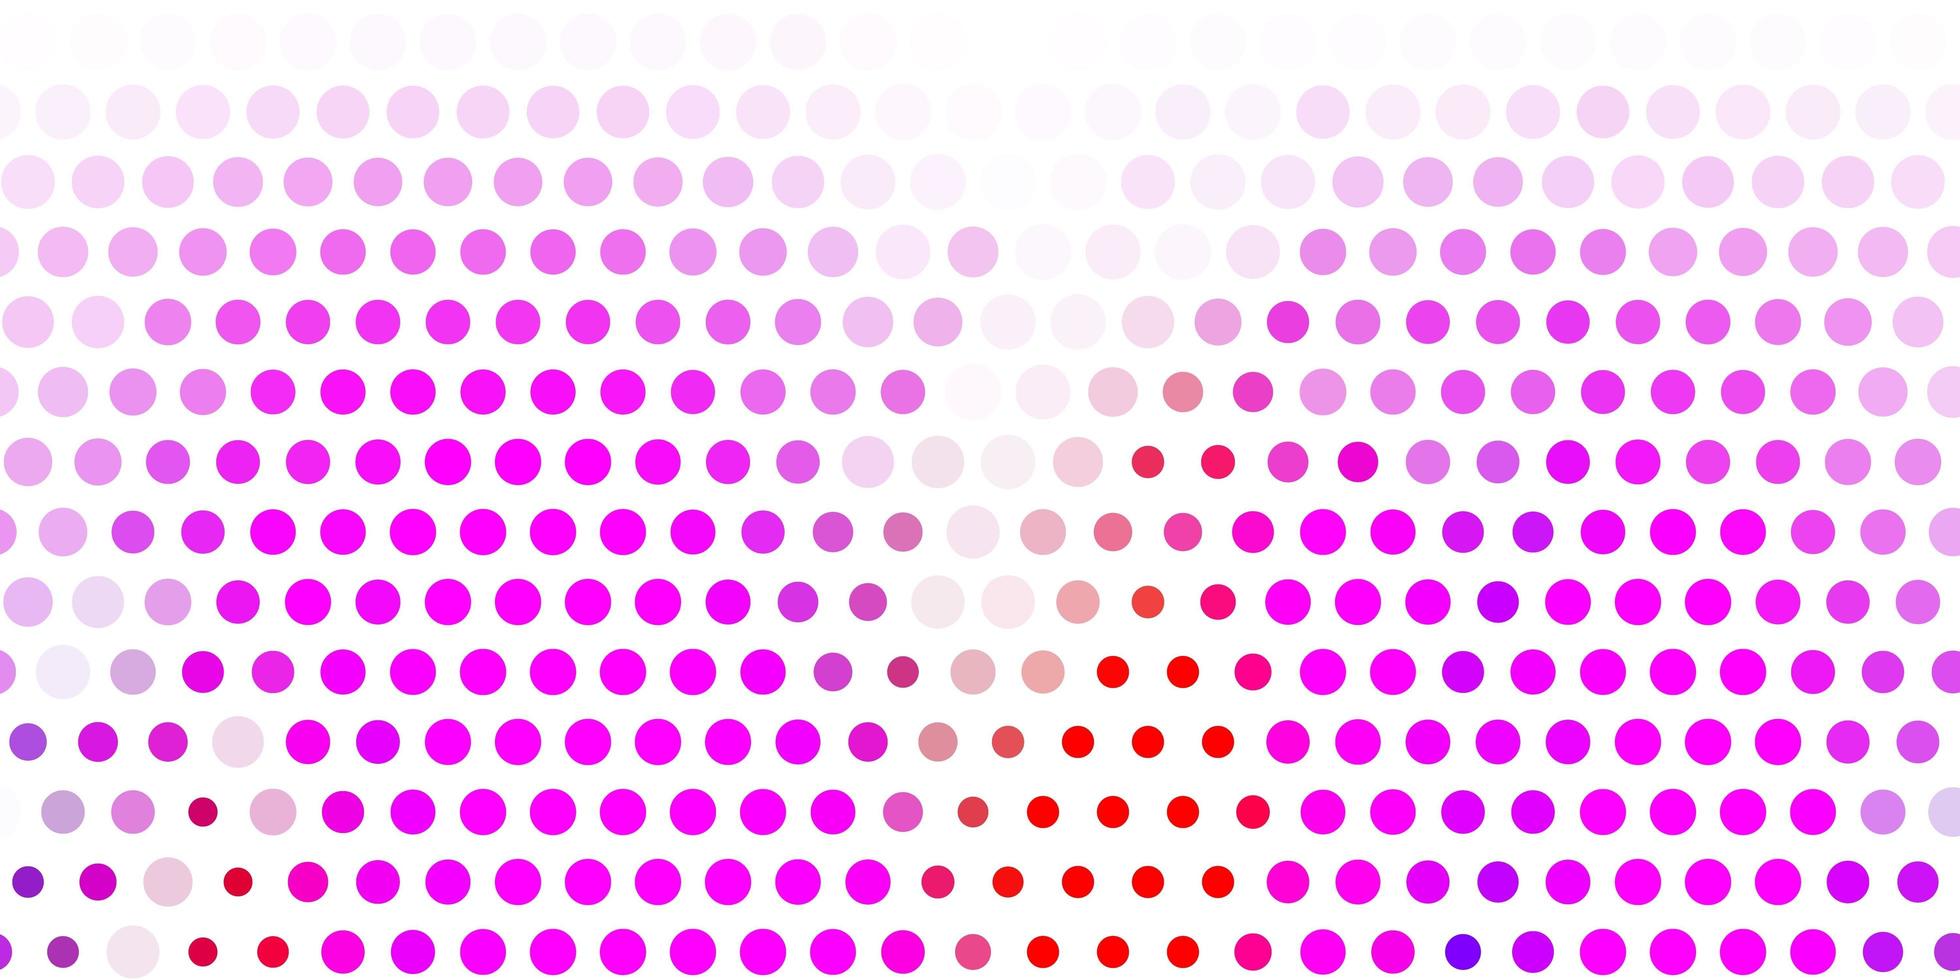 ljusrosa, röd vektor bakgrund med prickar.